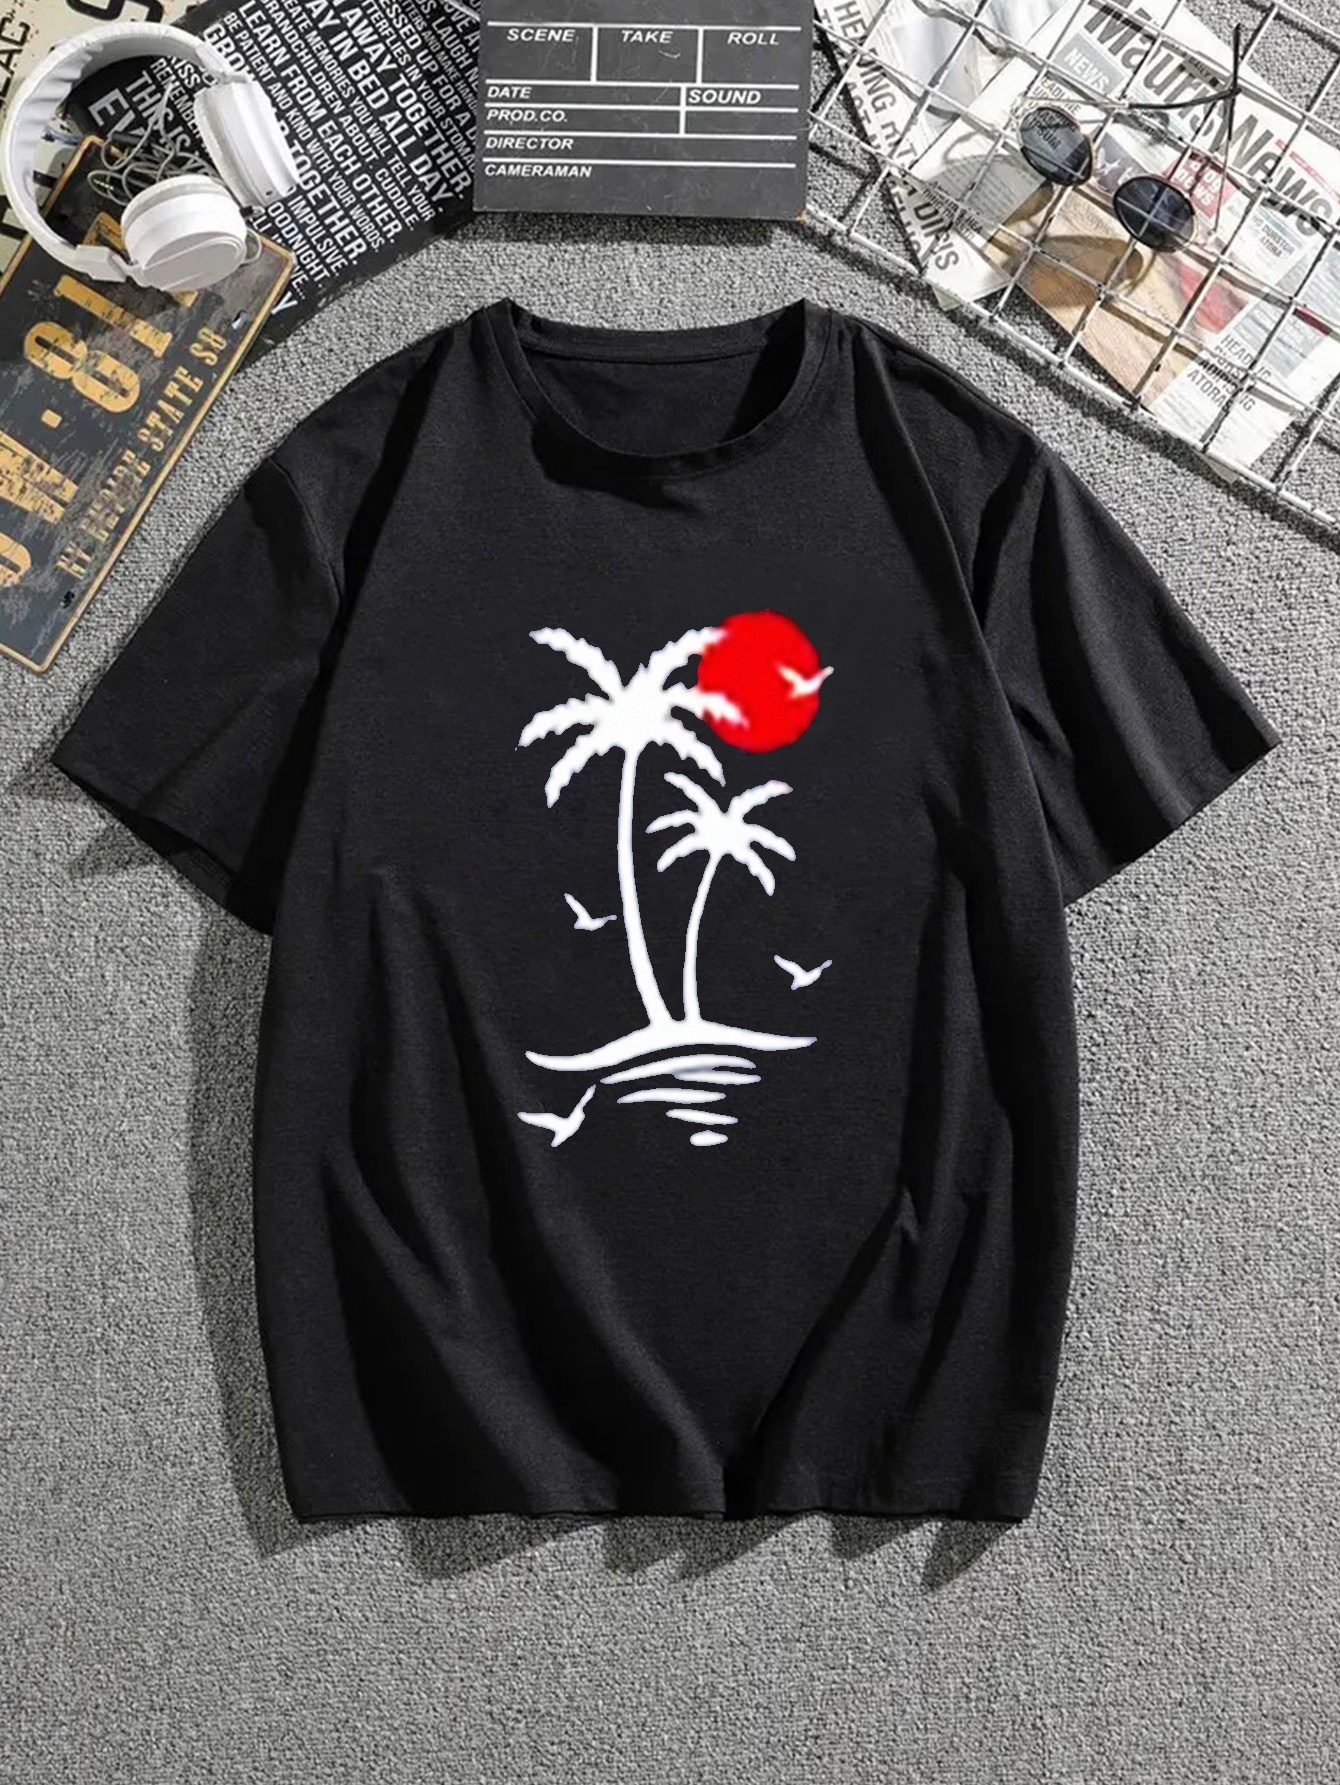 Palm Angels Tshirt logo on the collar graphic tee summer tshirt mens  oversized tshirt